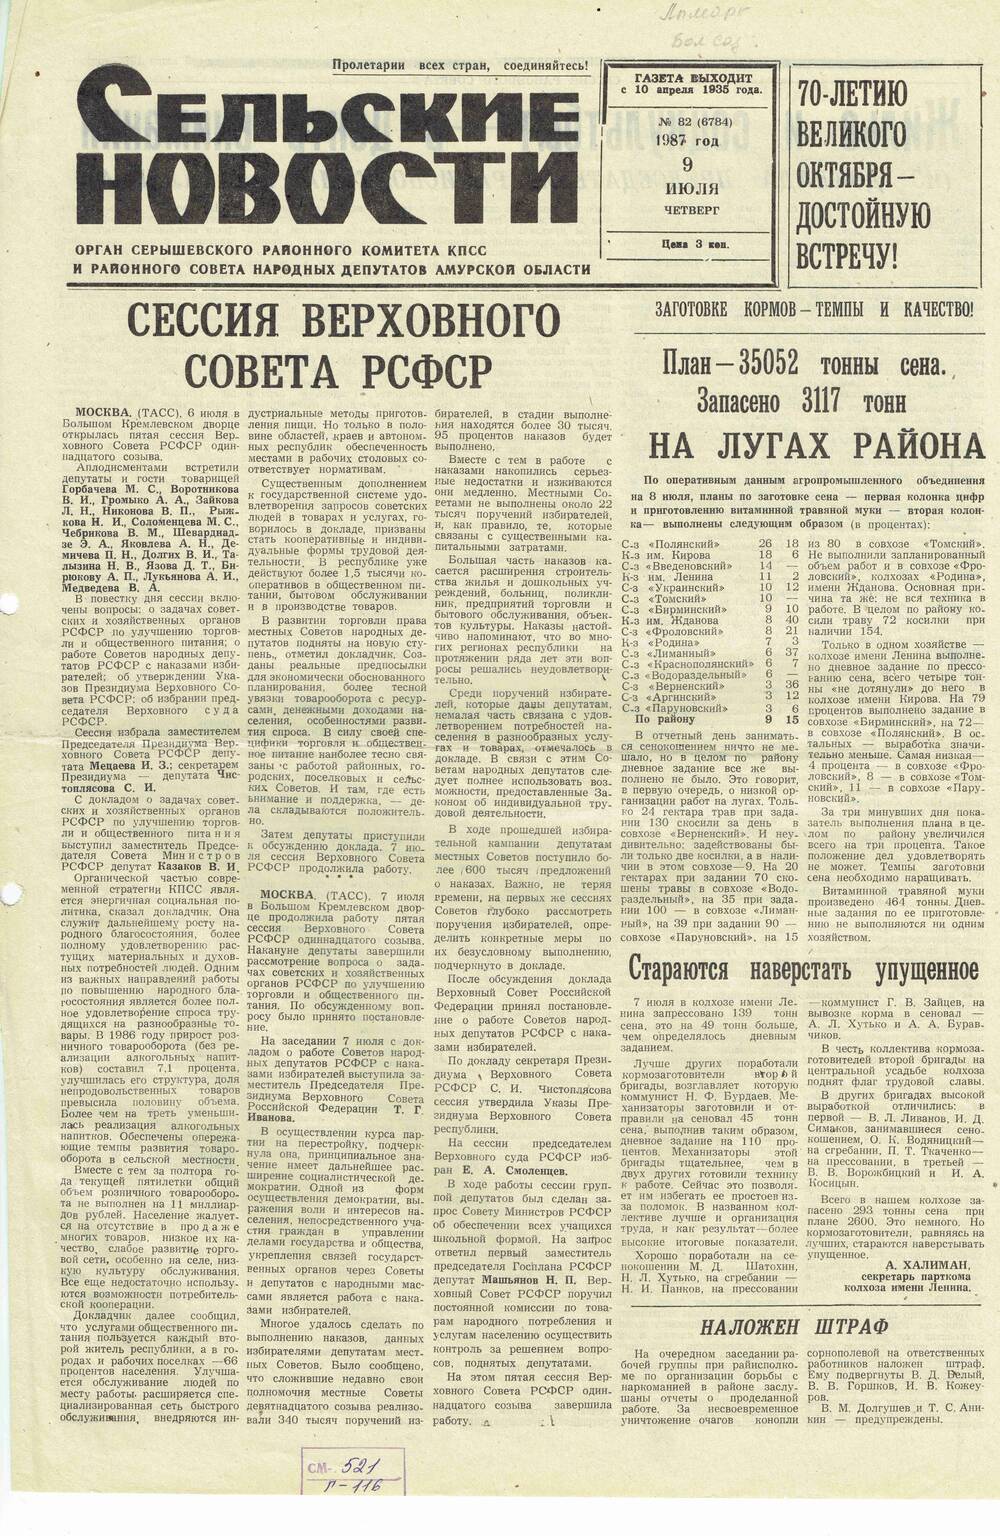 Газета «Сельские новости» №82 09.07.1987 года выпуска.